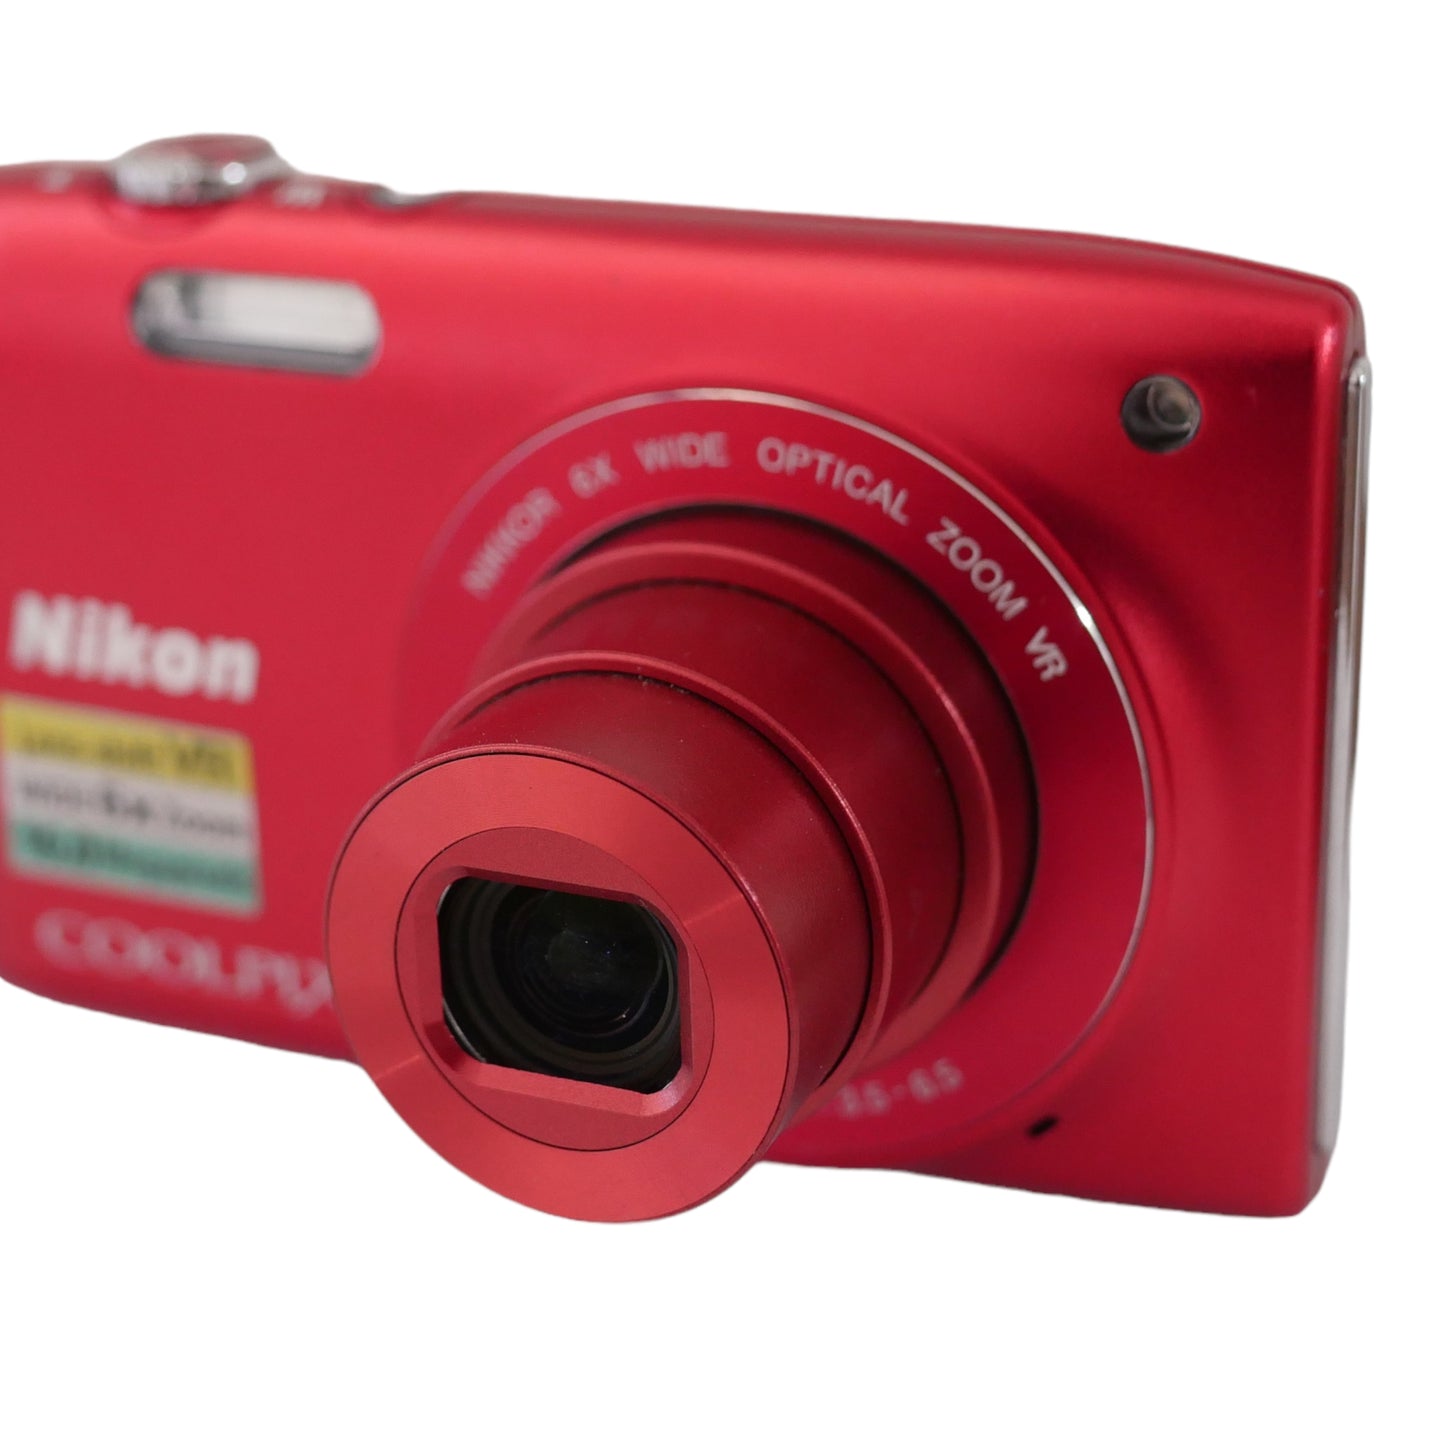 Nikon Coolpix S3300 16 Megapixel Digital Camera